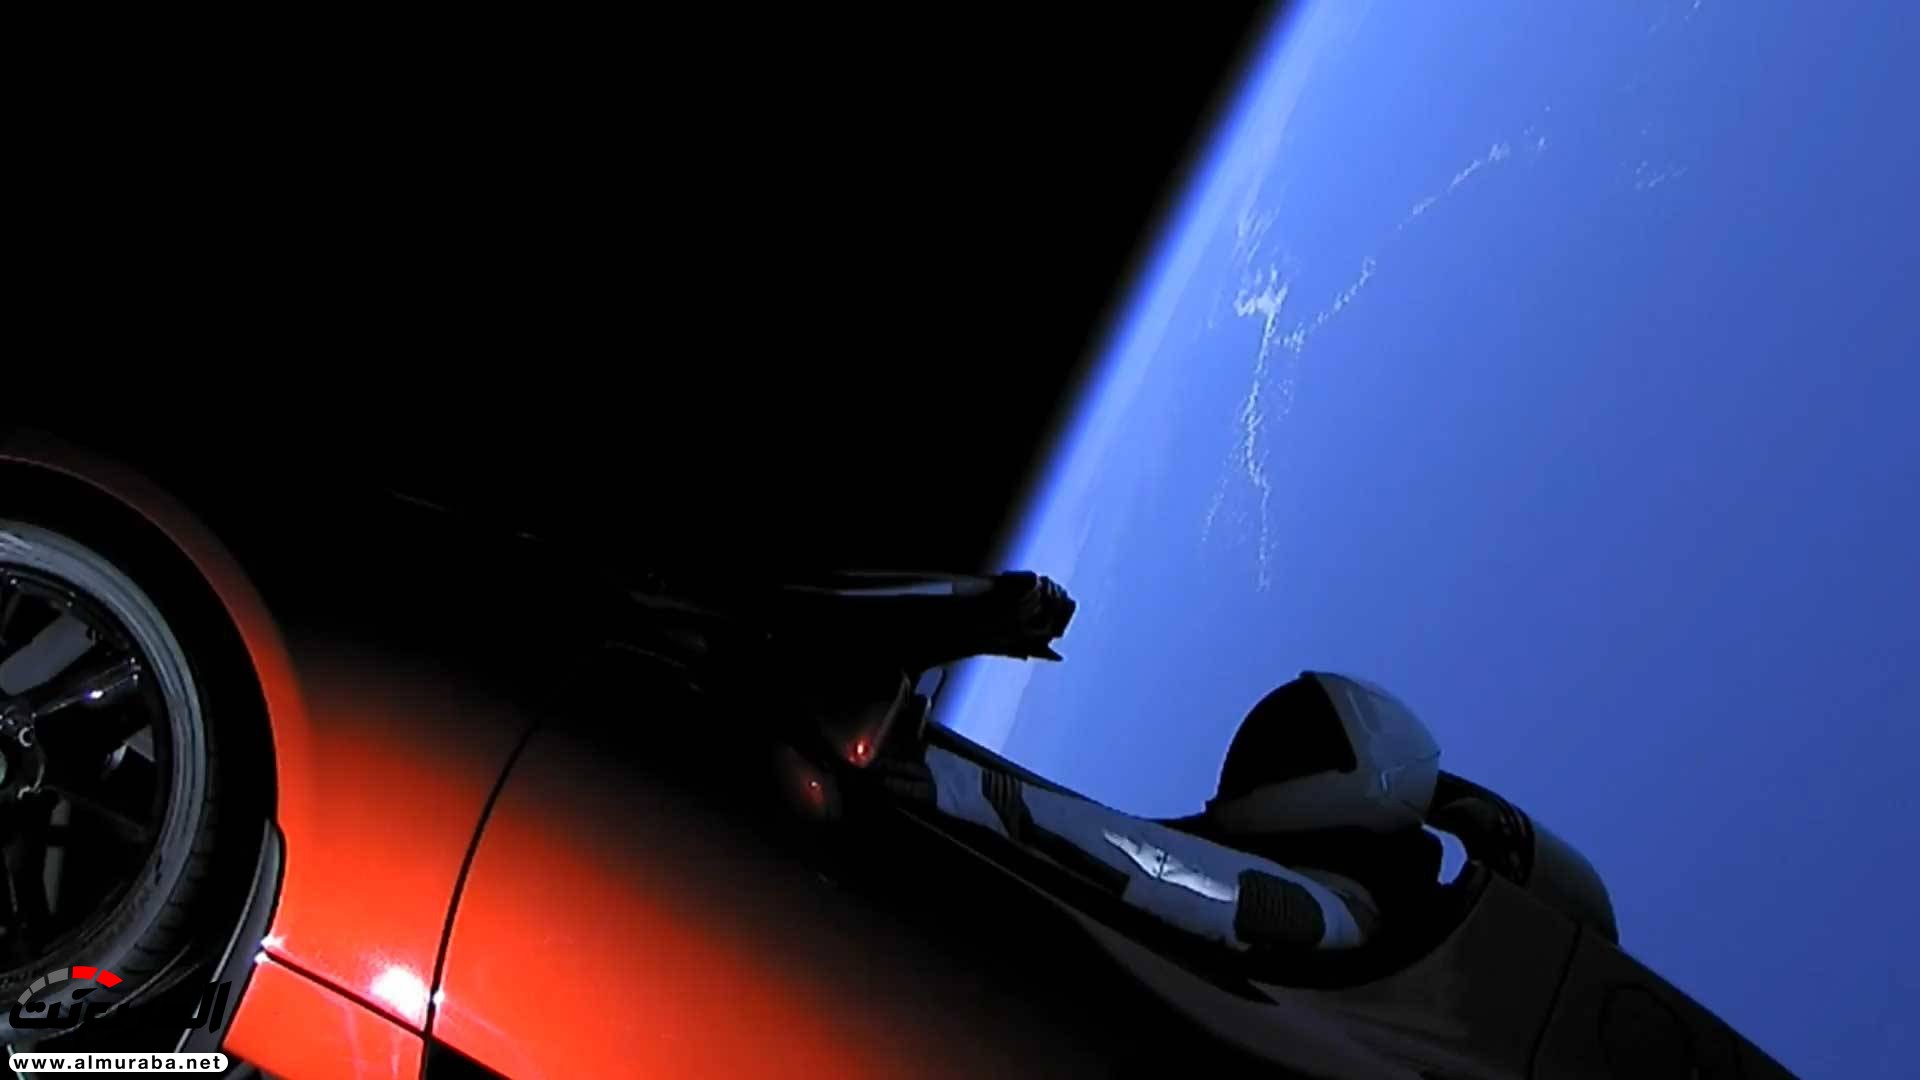 "بالفيديو والصور" إيلون ماسك يطلق تيسلا رودستر إلى المريخ في أقوى صاروخ بالعالم 43